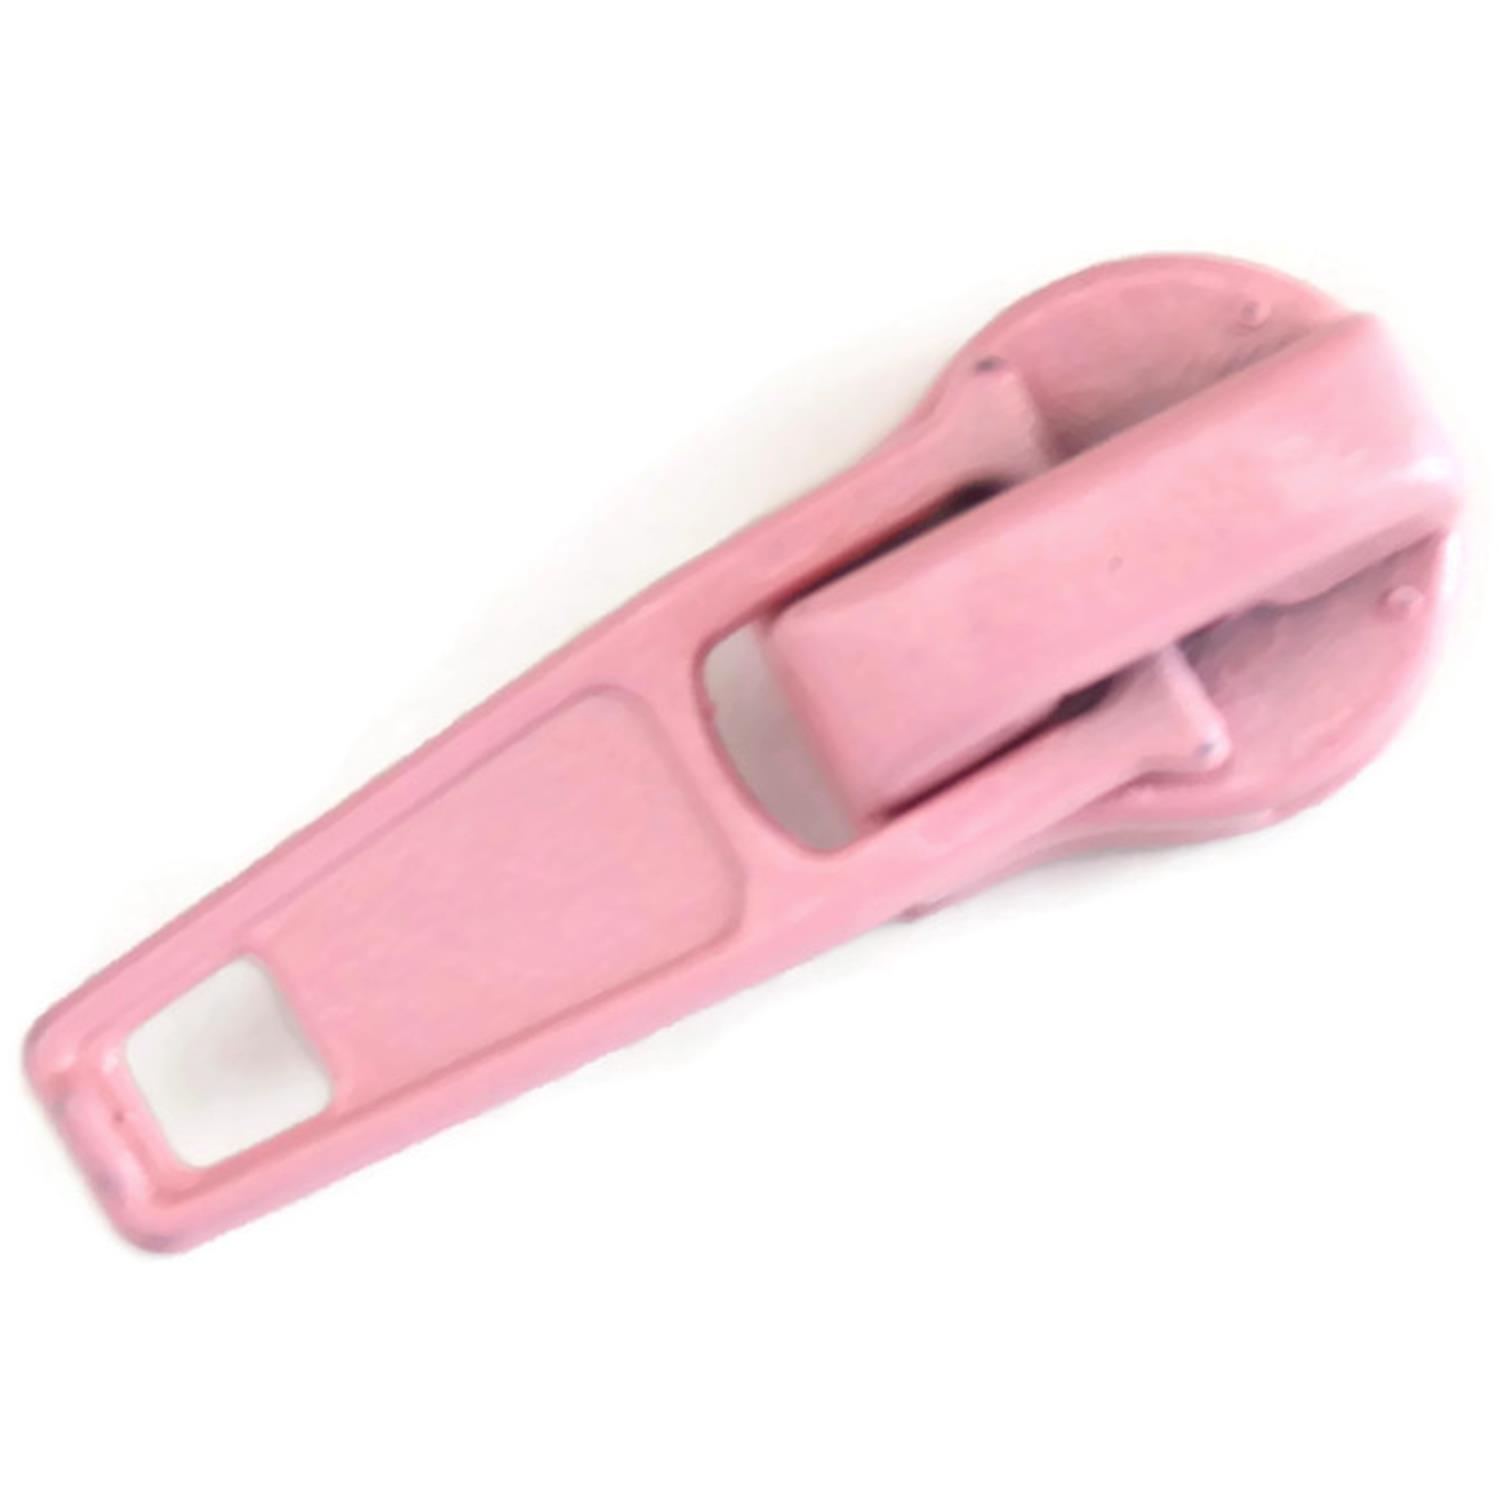 Autolock Schieber für Endlosreißverschluss 5mm, 42 Farben 62 - rosa